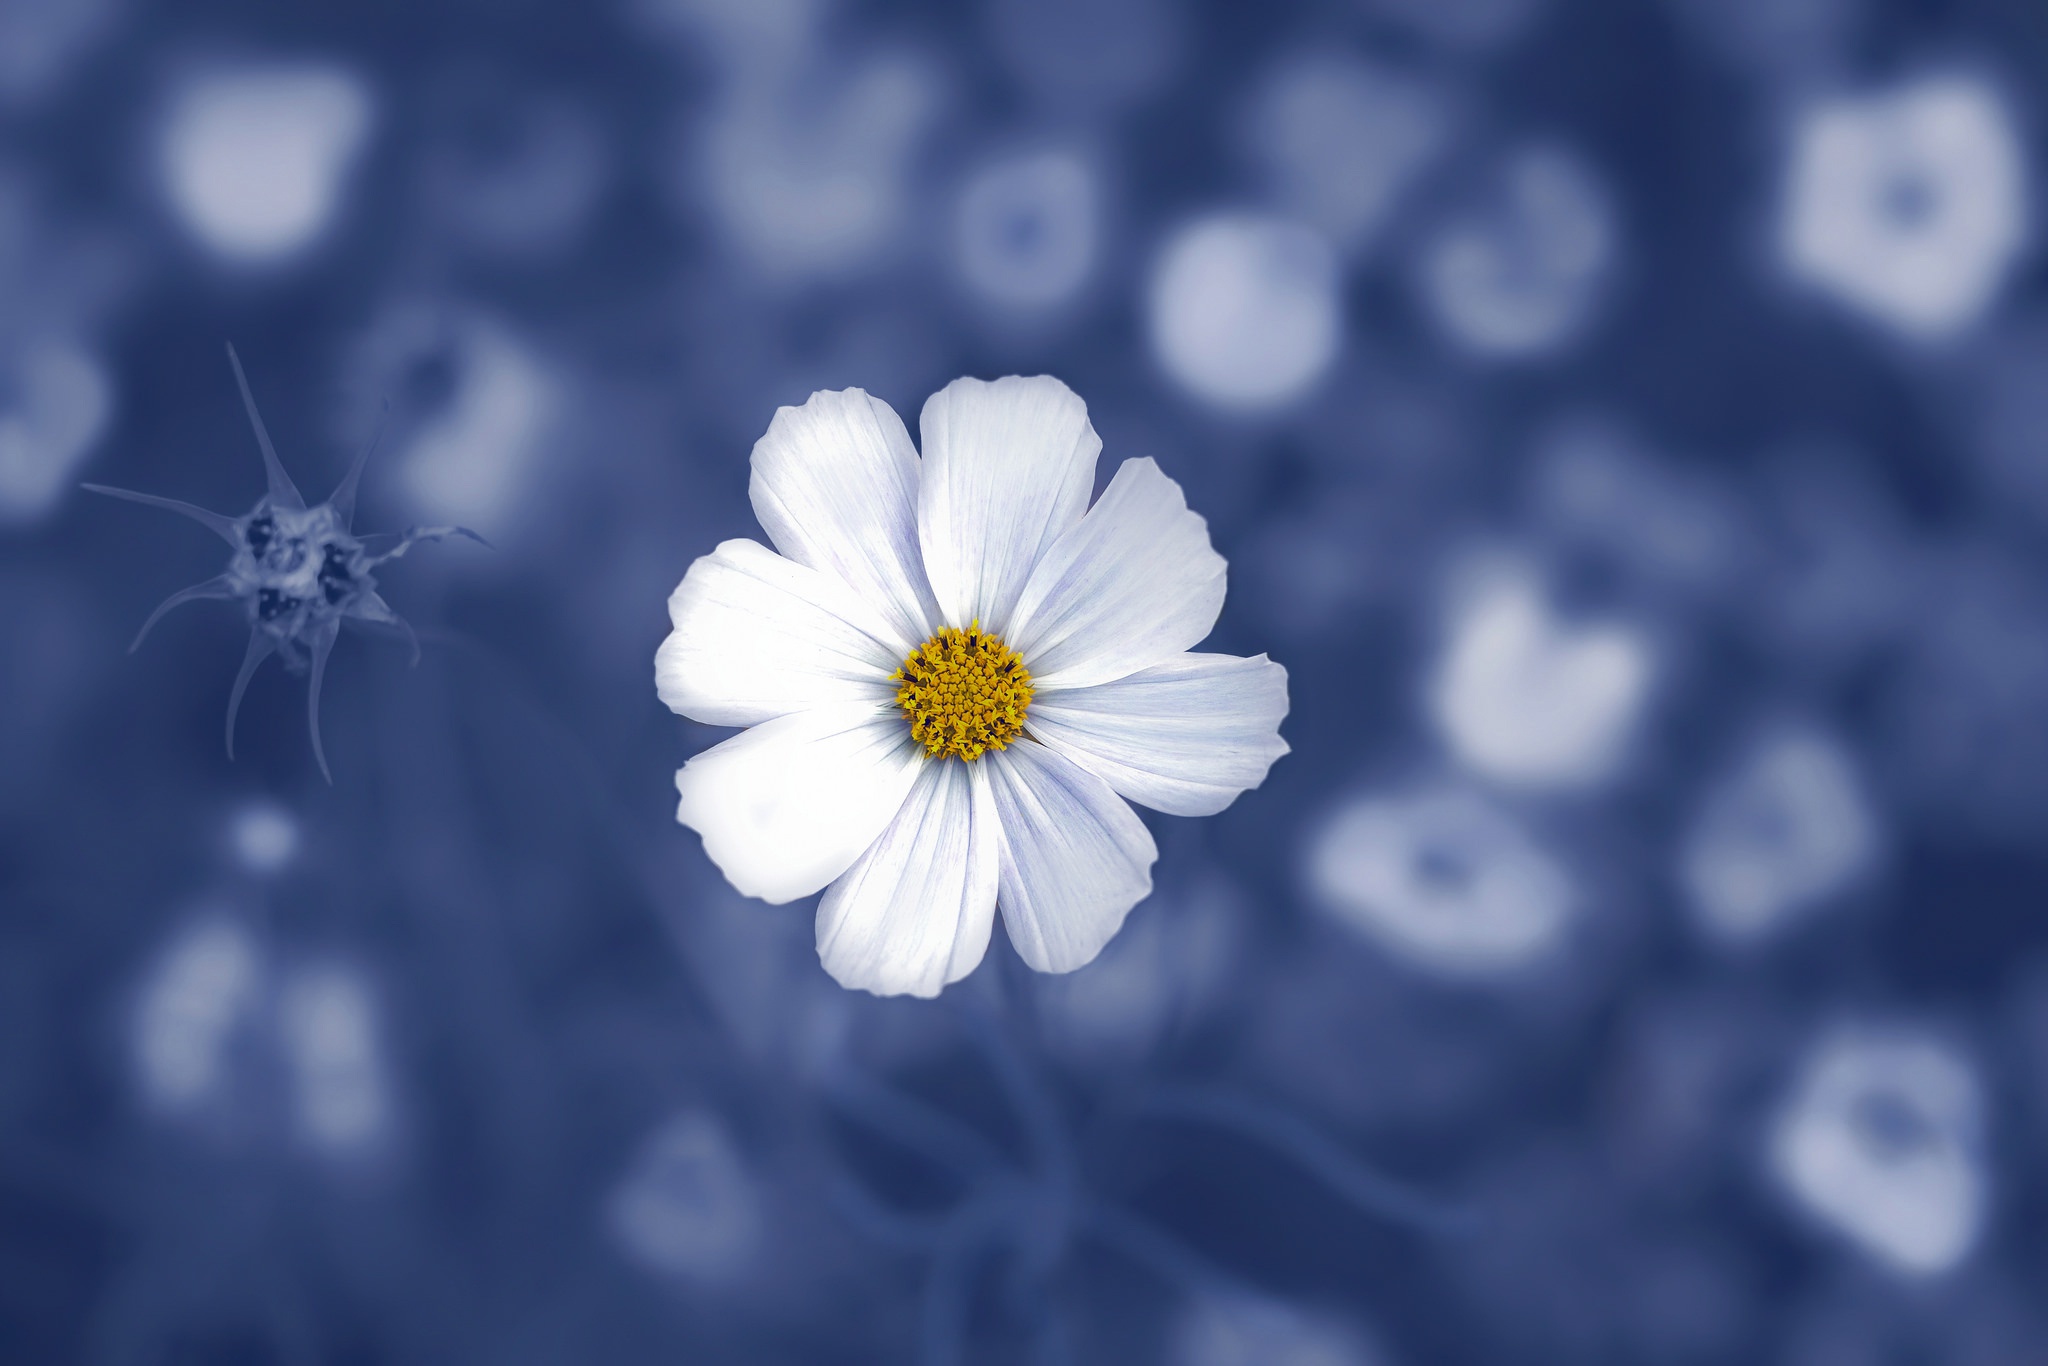 Khi nhìn những bức ảnh về loài hoa màu xanh dịu dàng, bạn sẽ cảm nhận được sự thư thái và mát mẻ tuyệt vời. Làm mới tâm trí bạn và đắm mình vào những bức ảnh đầy sắc màu này.